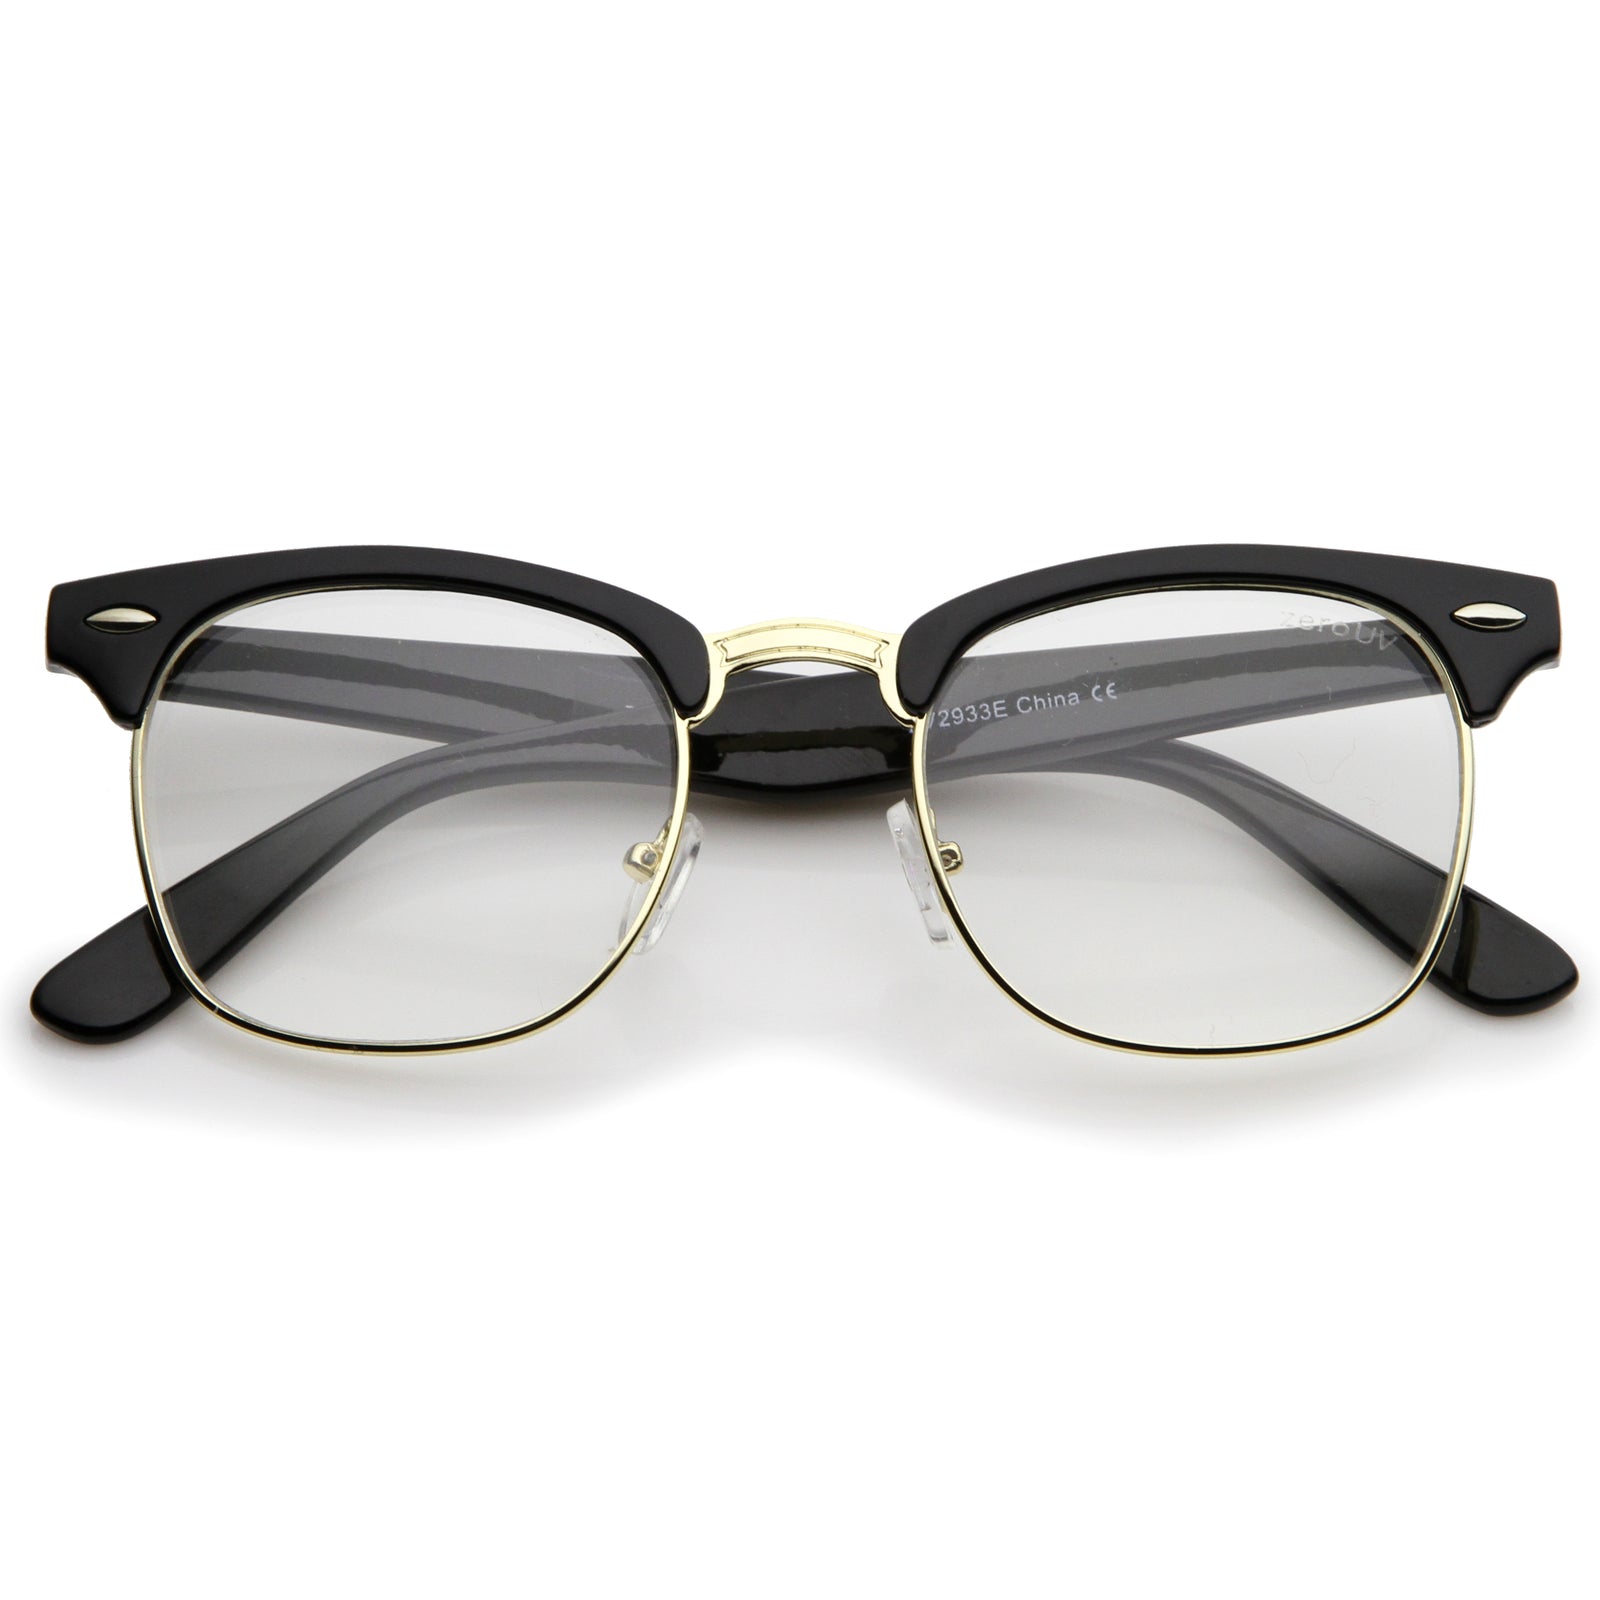 vintage optical rx clear lens half frame glasses